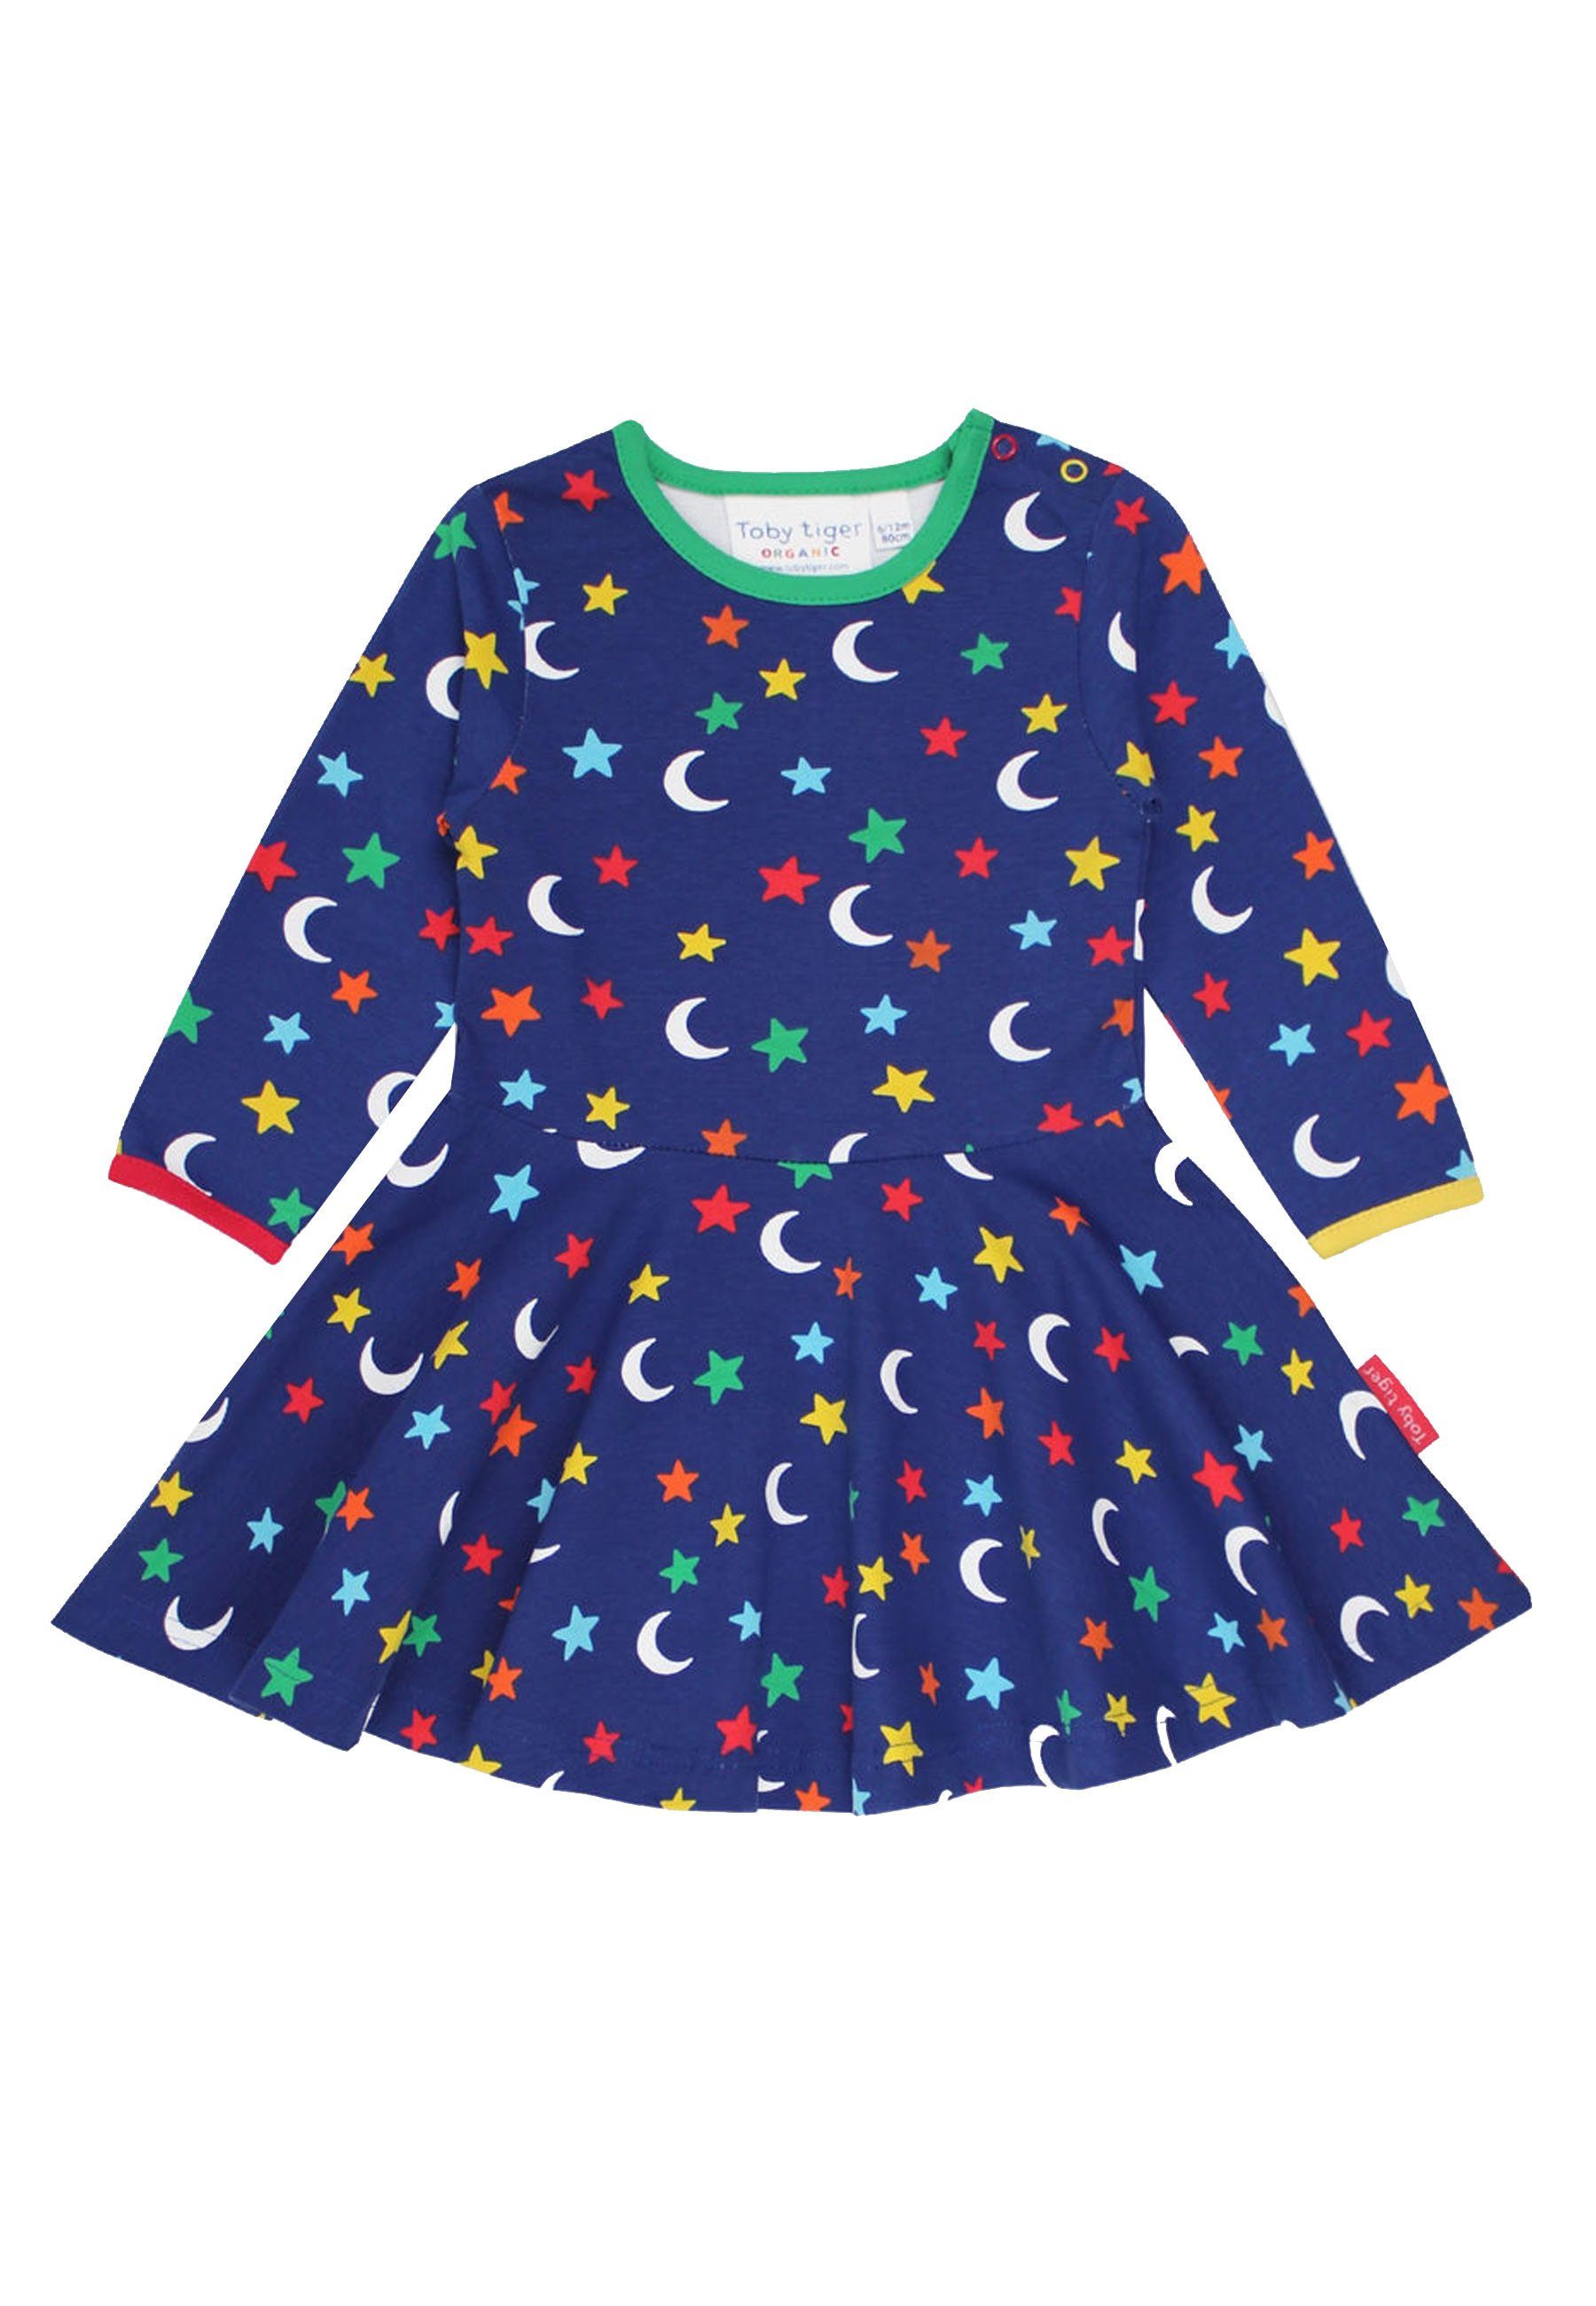 Toby Print Shirtkleid mit Skater Mond Sterne und Kleid Tiger